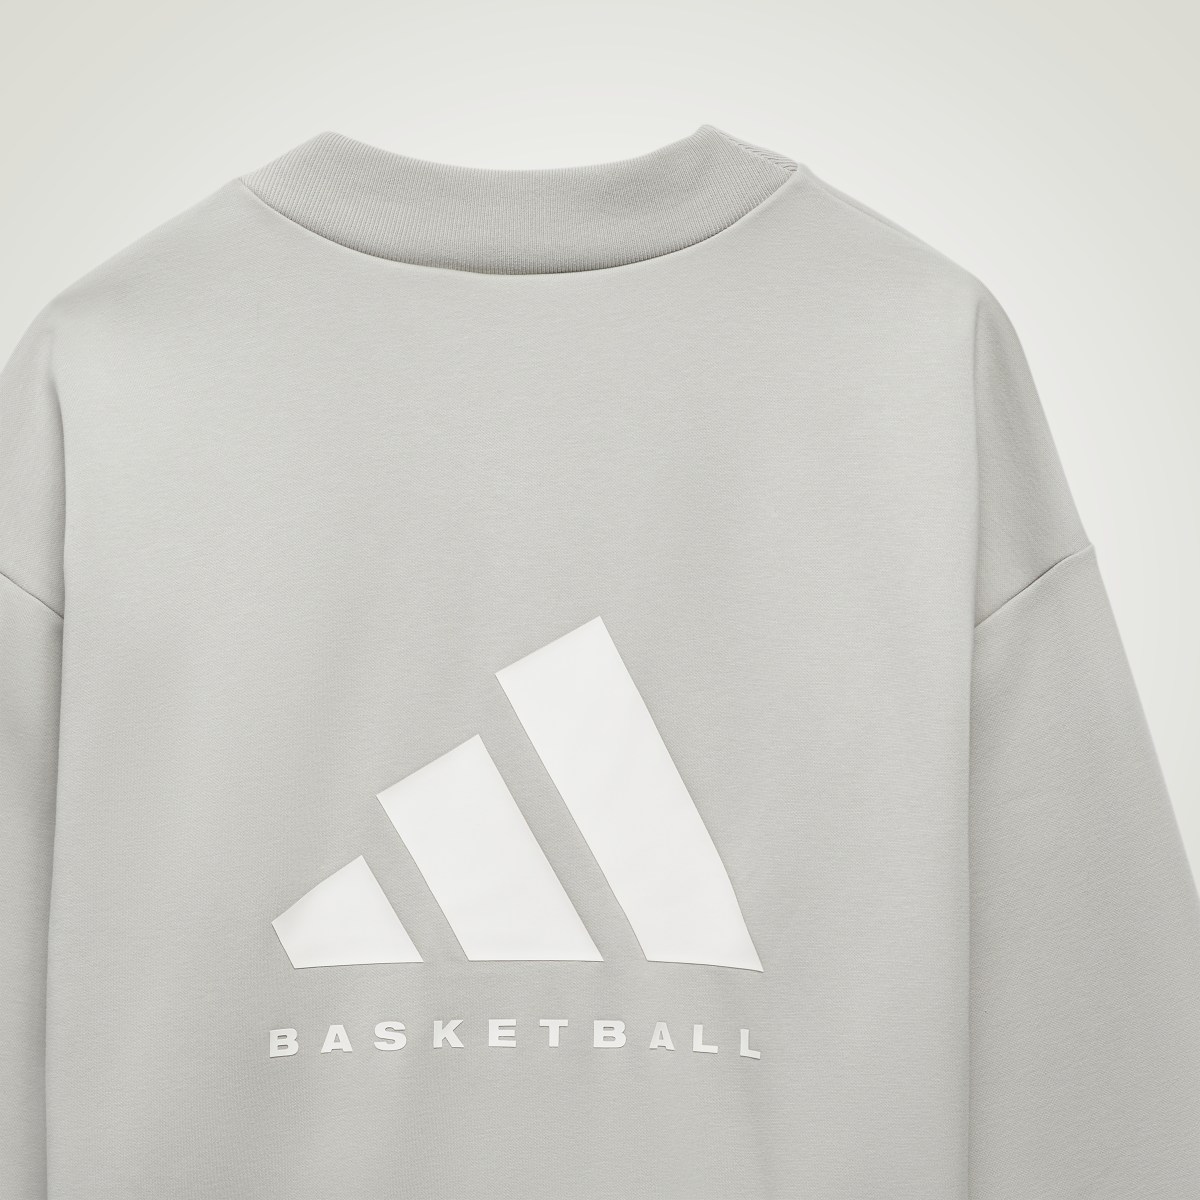 Adidas Basketball Crew Sweatshirt. 6